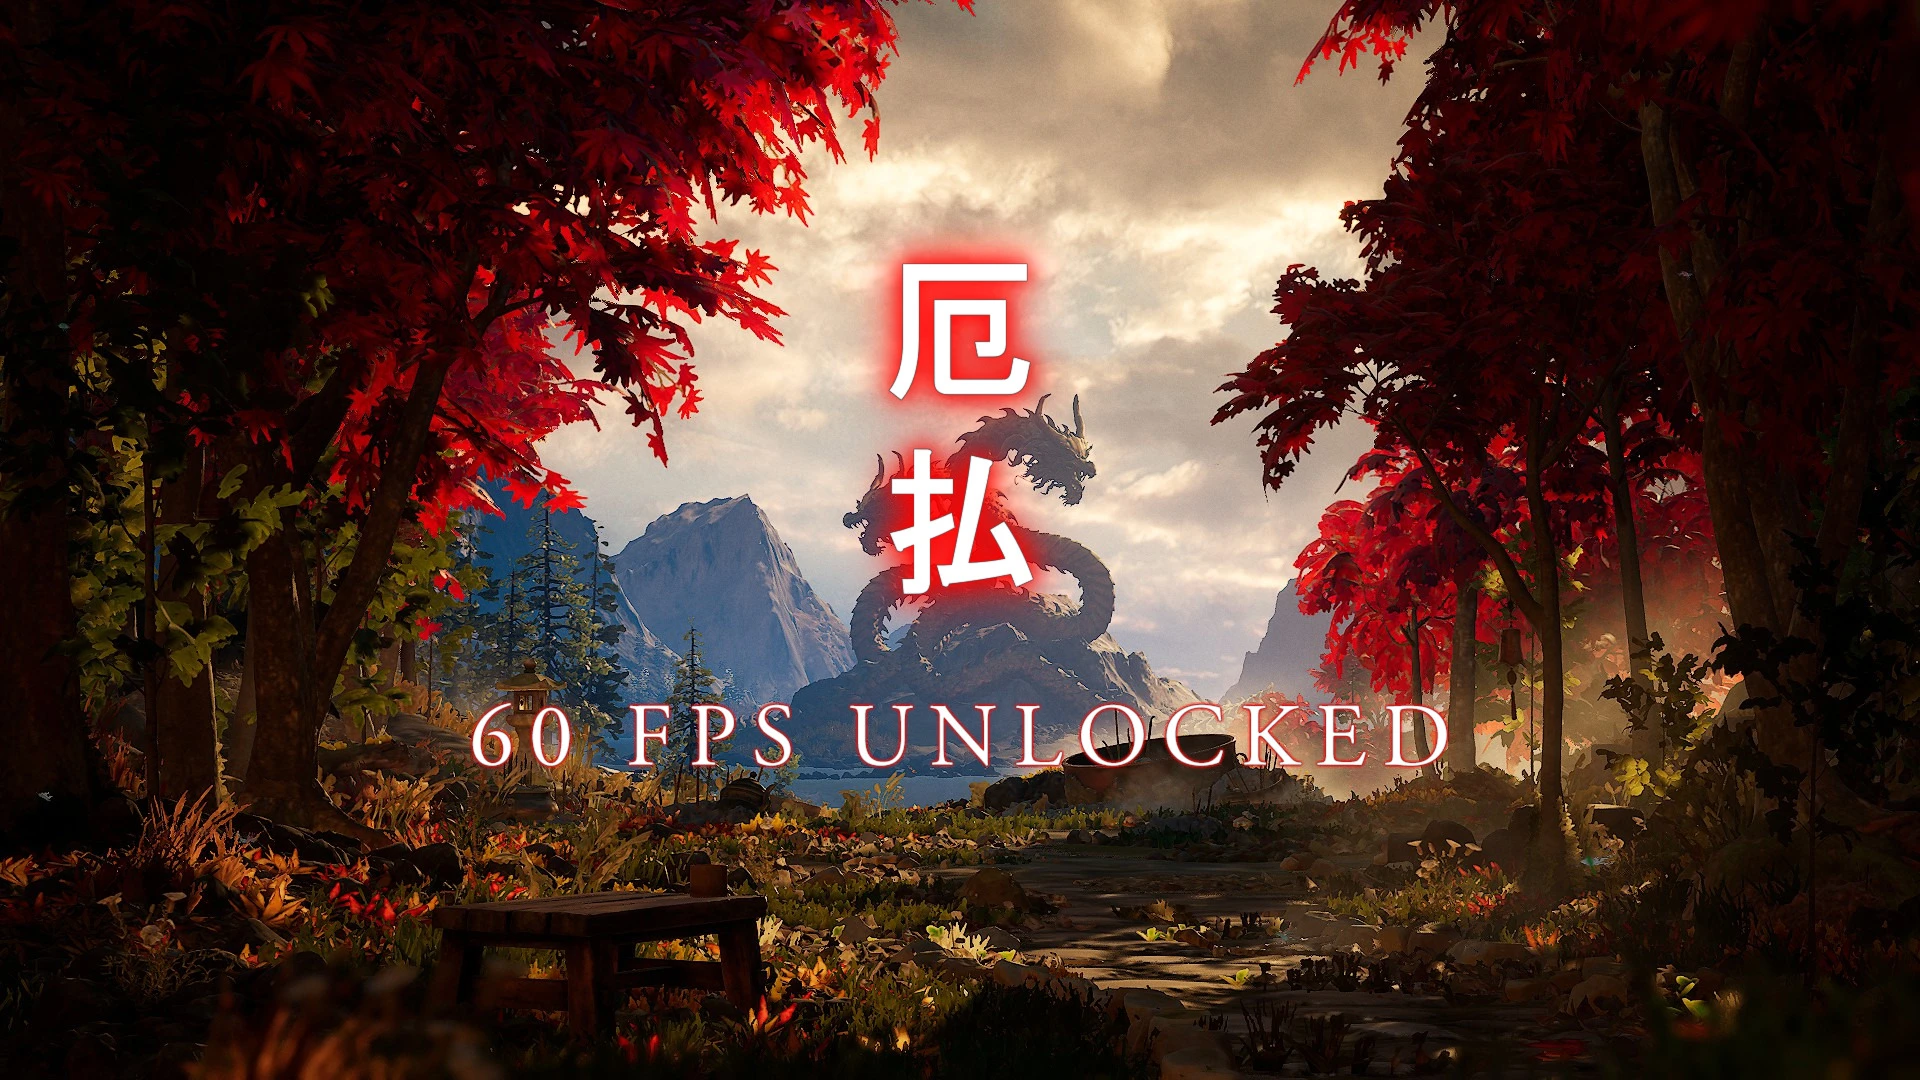 Uploaded banner for 60 FPS Unlocked mod for MK1